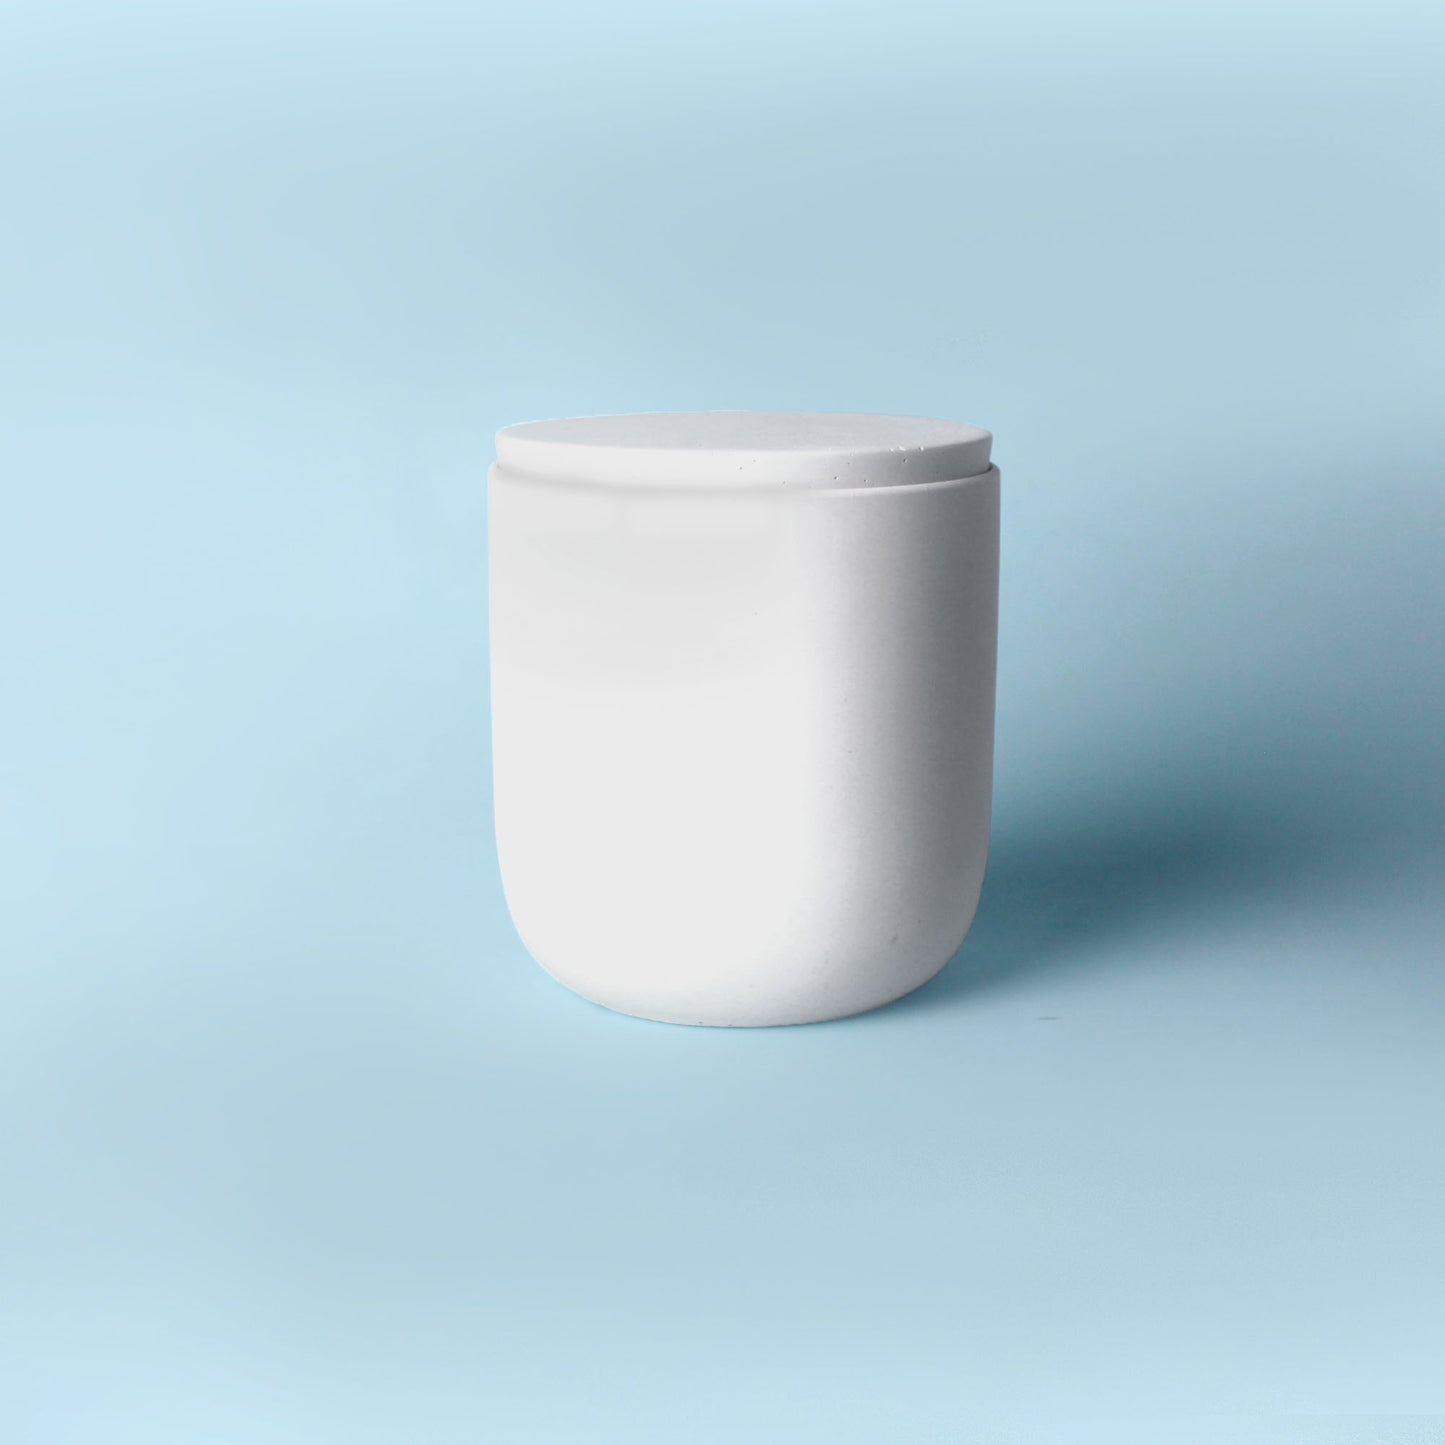 16 oz LIRI vessel mold (Ceramic, Small)